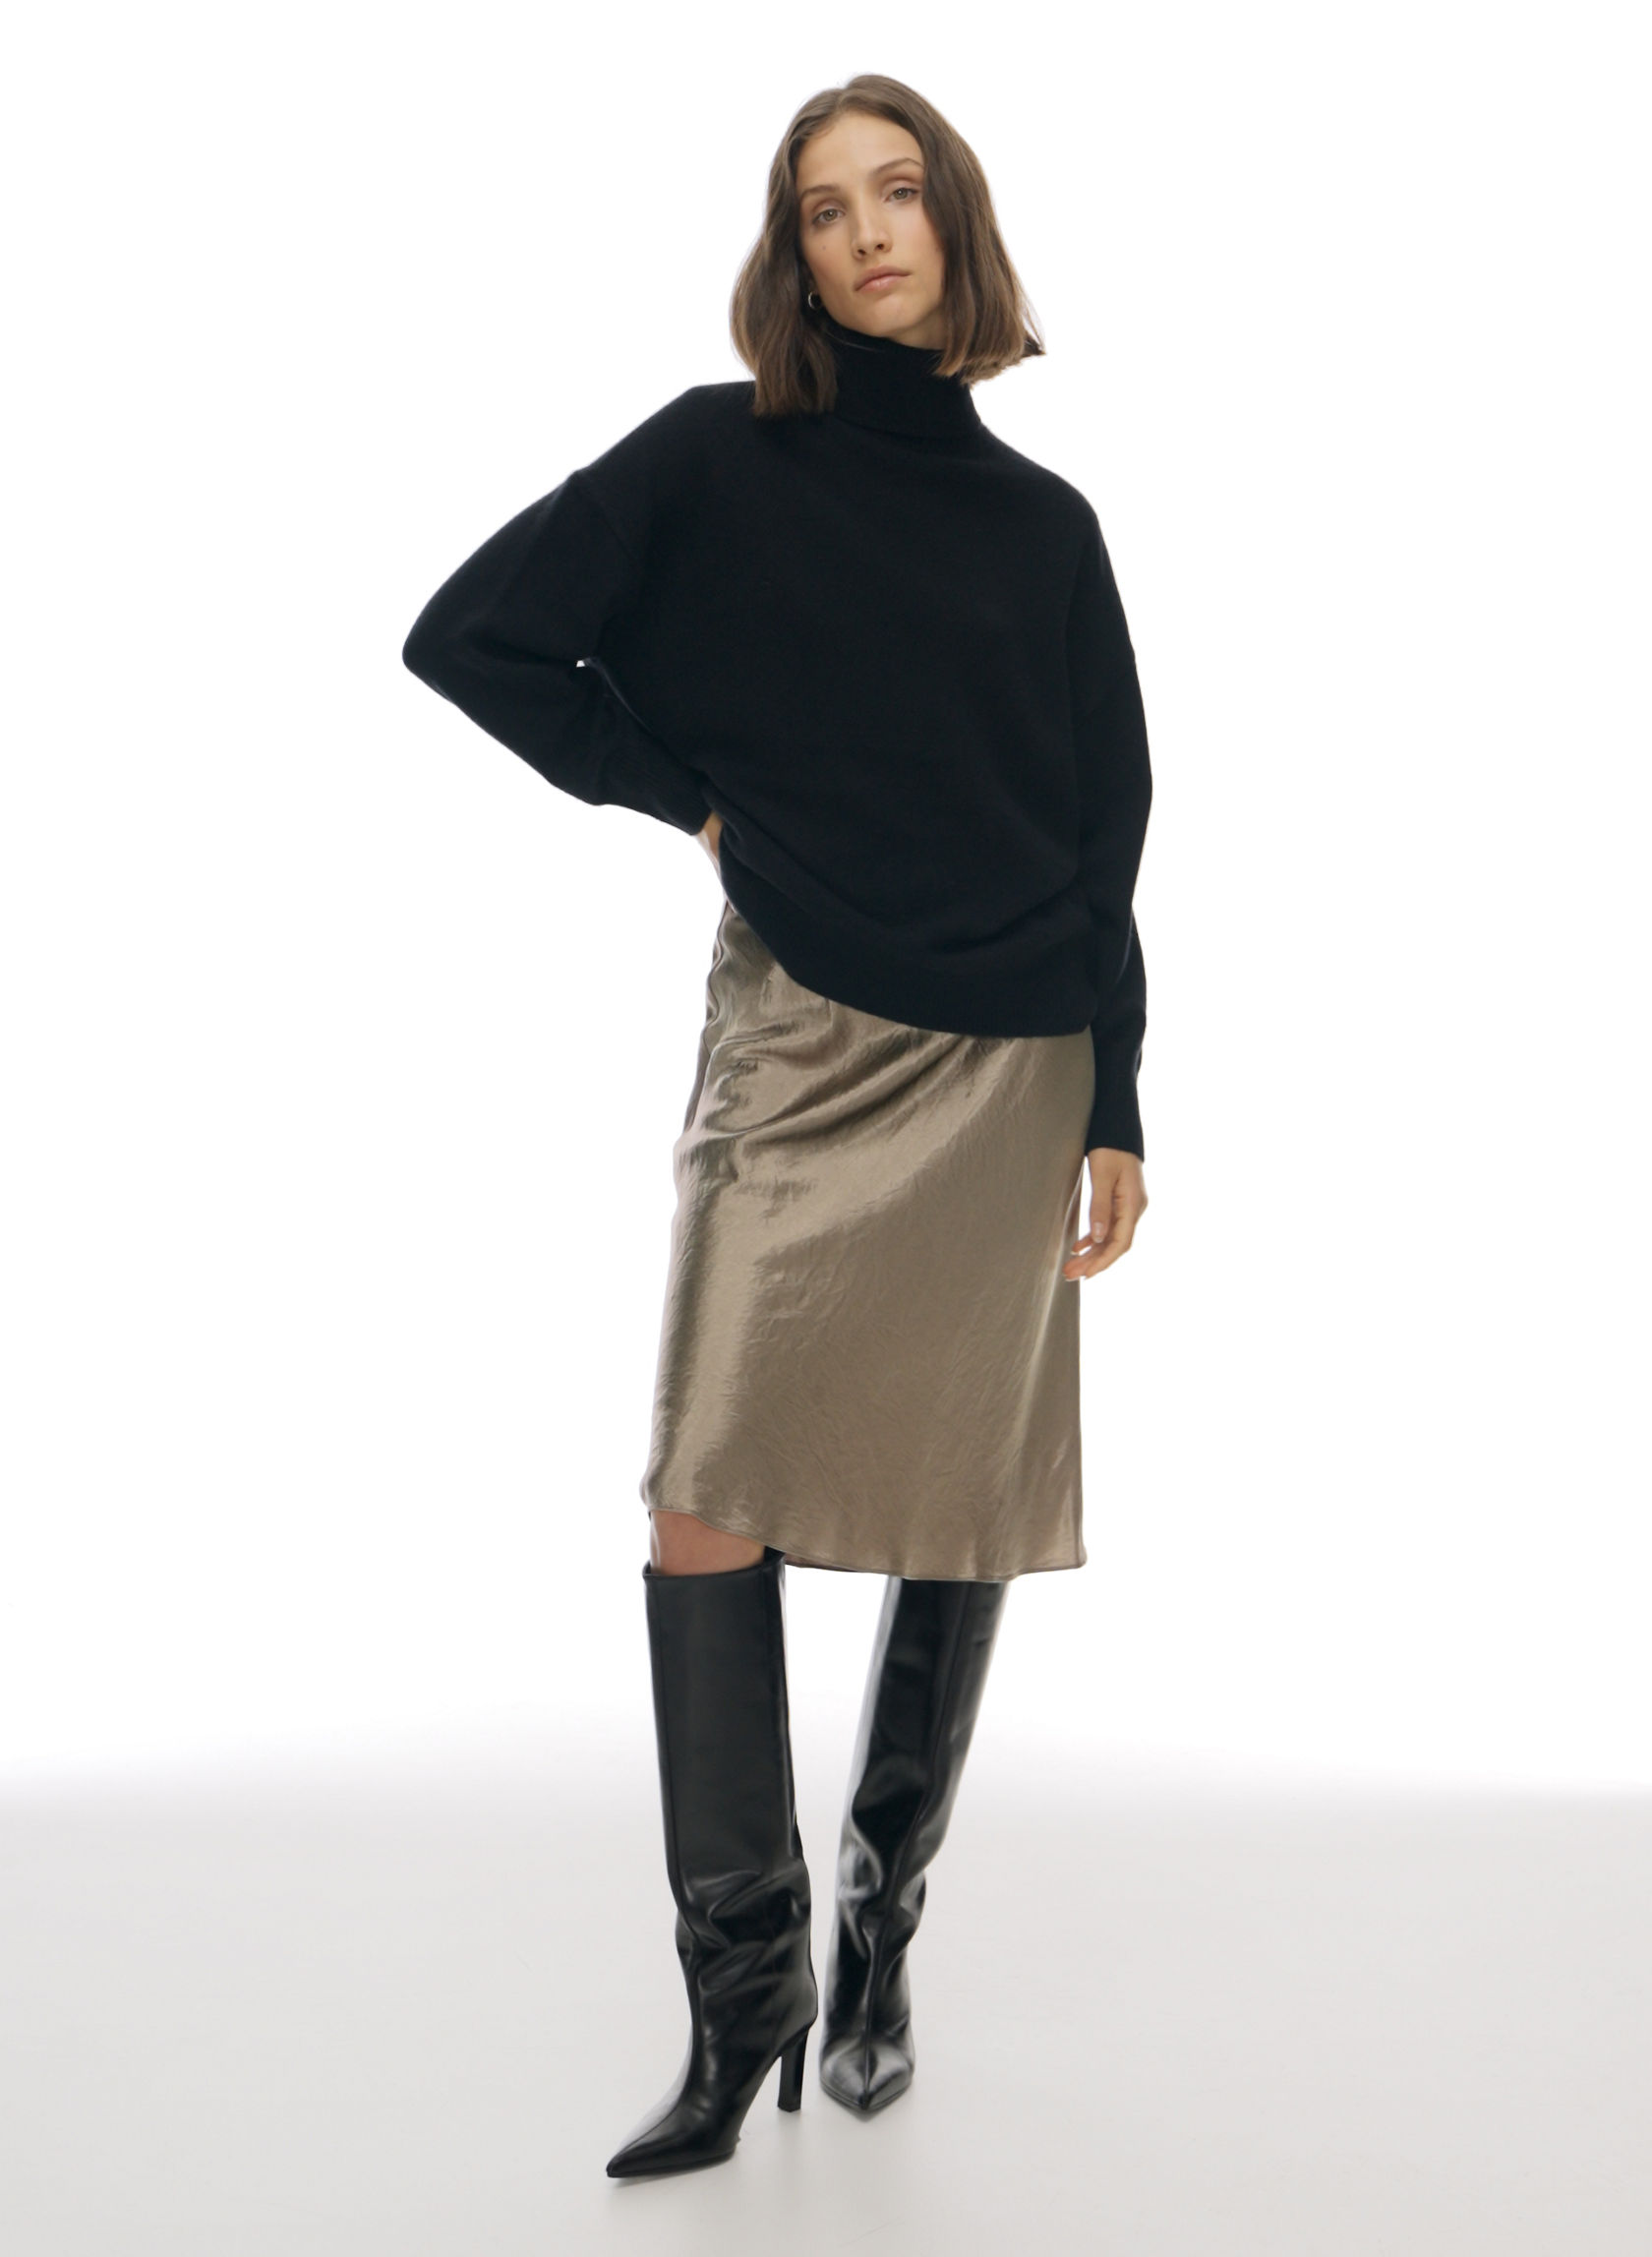 Leather Pencil Skirt - Midnight black - Ladies